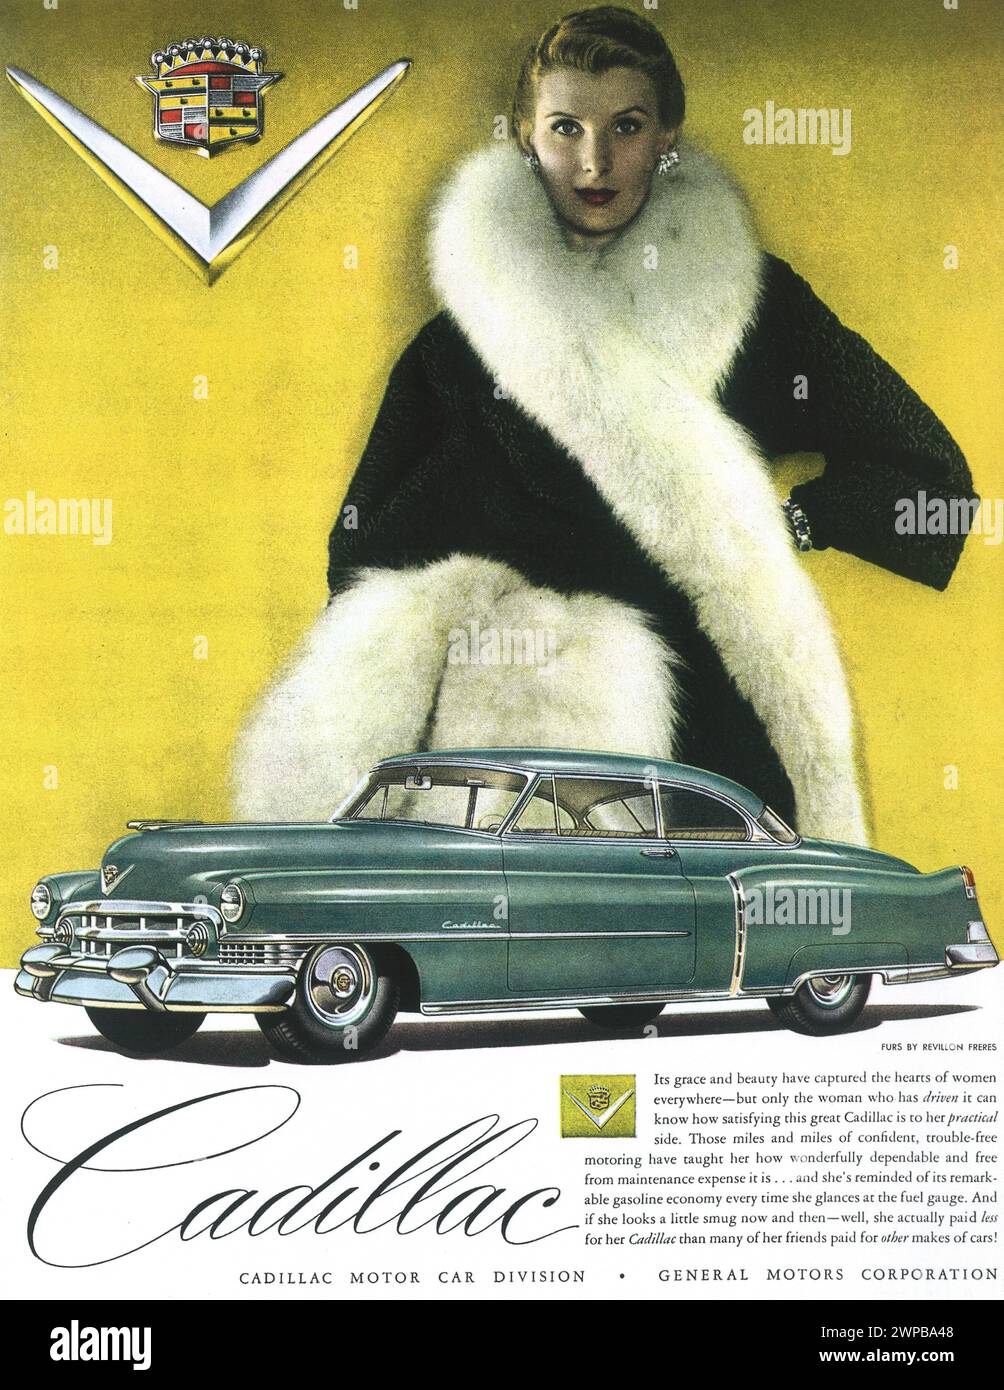 1950 Cadillac Series 62 annuncio a stampa con pellicce di Revillon Freres Foto Stock